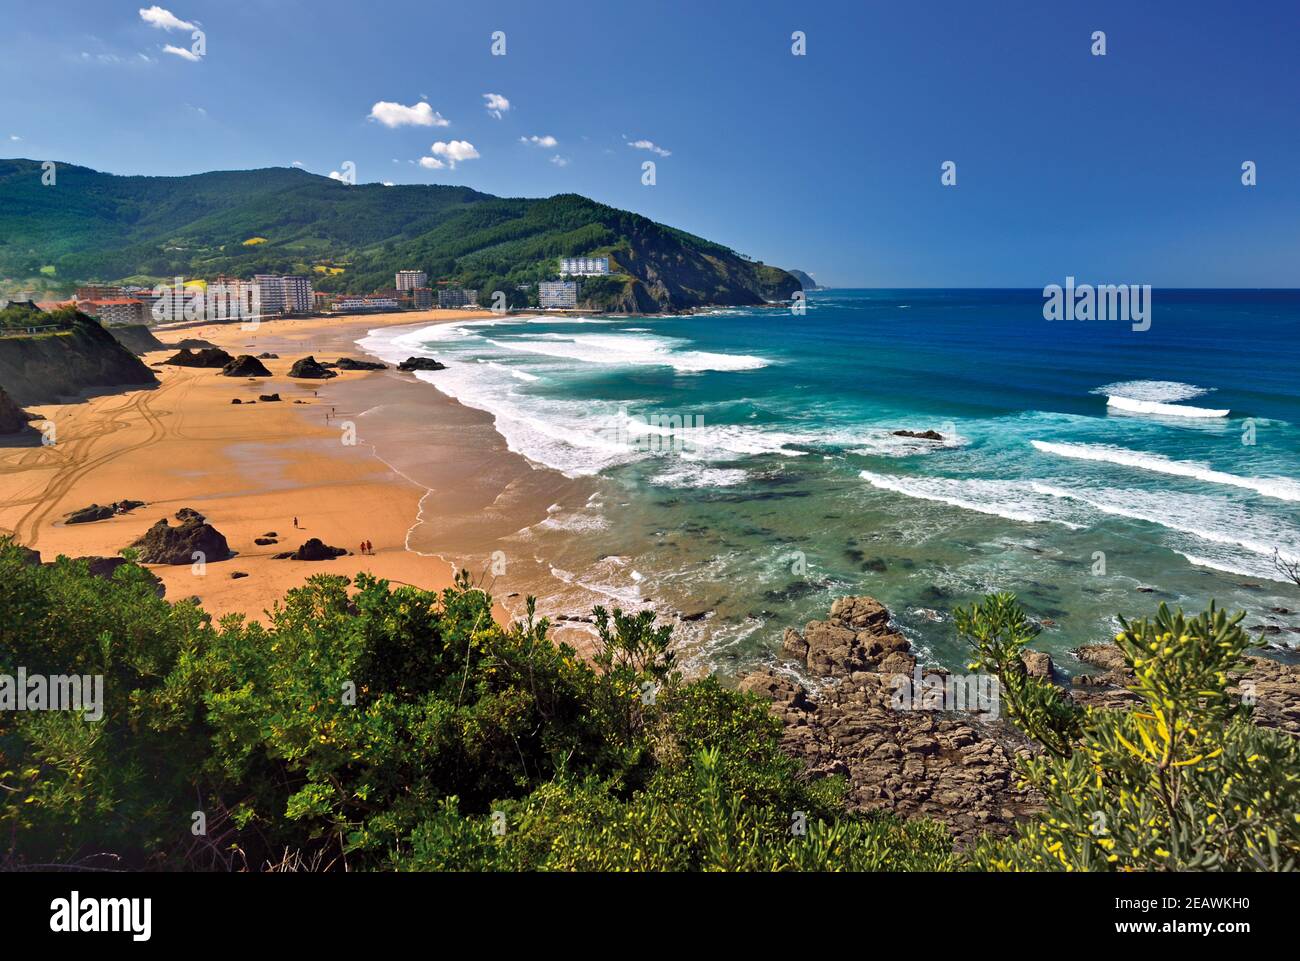 Vista de la playa de arena con el océano azul y las olas blancas rodeado de verdes colinas Foto de stock